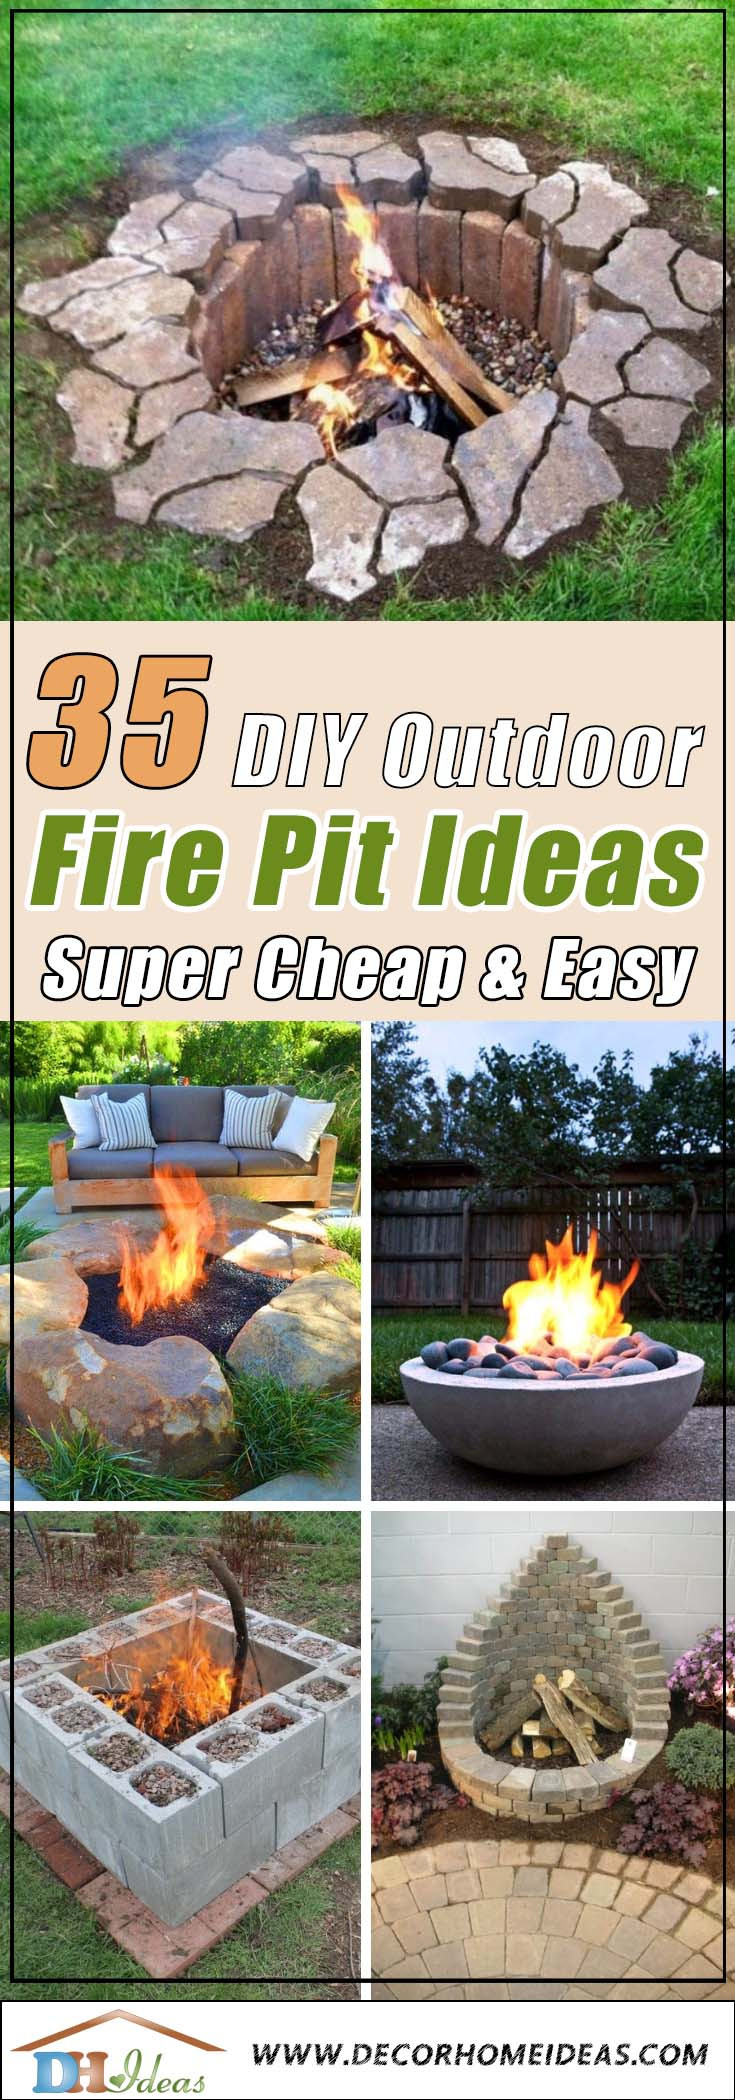 DIY Outdoor Fireplace Ideas
 35 Best DIY Outdoor Fire Pit Ideas [ Super Cheap & Easy